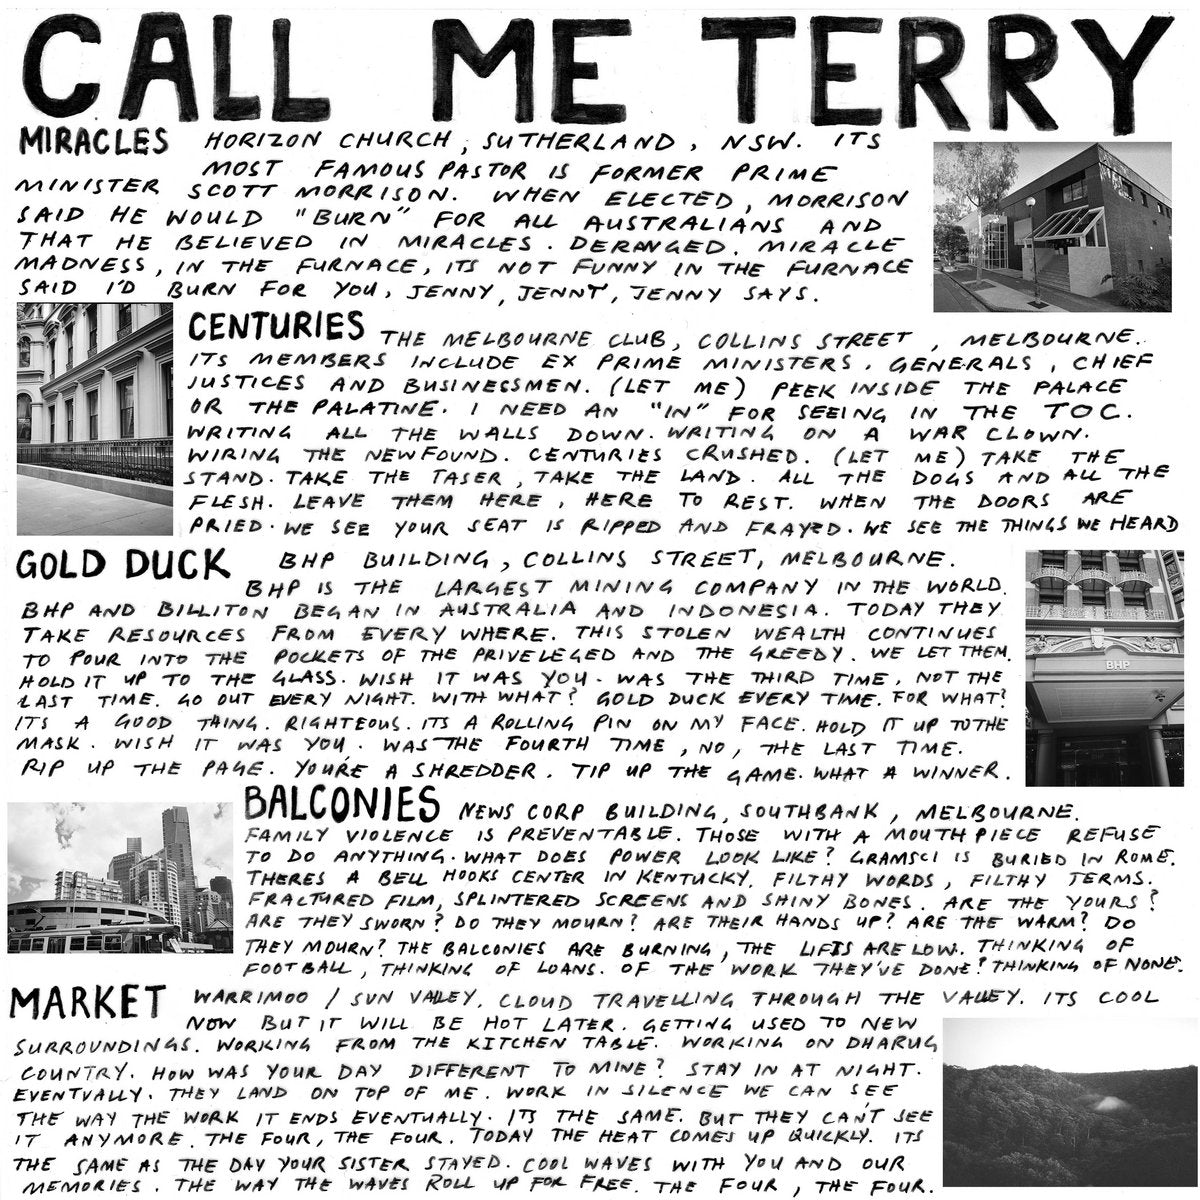 TERRY 'CALL ME TERRY'